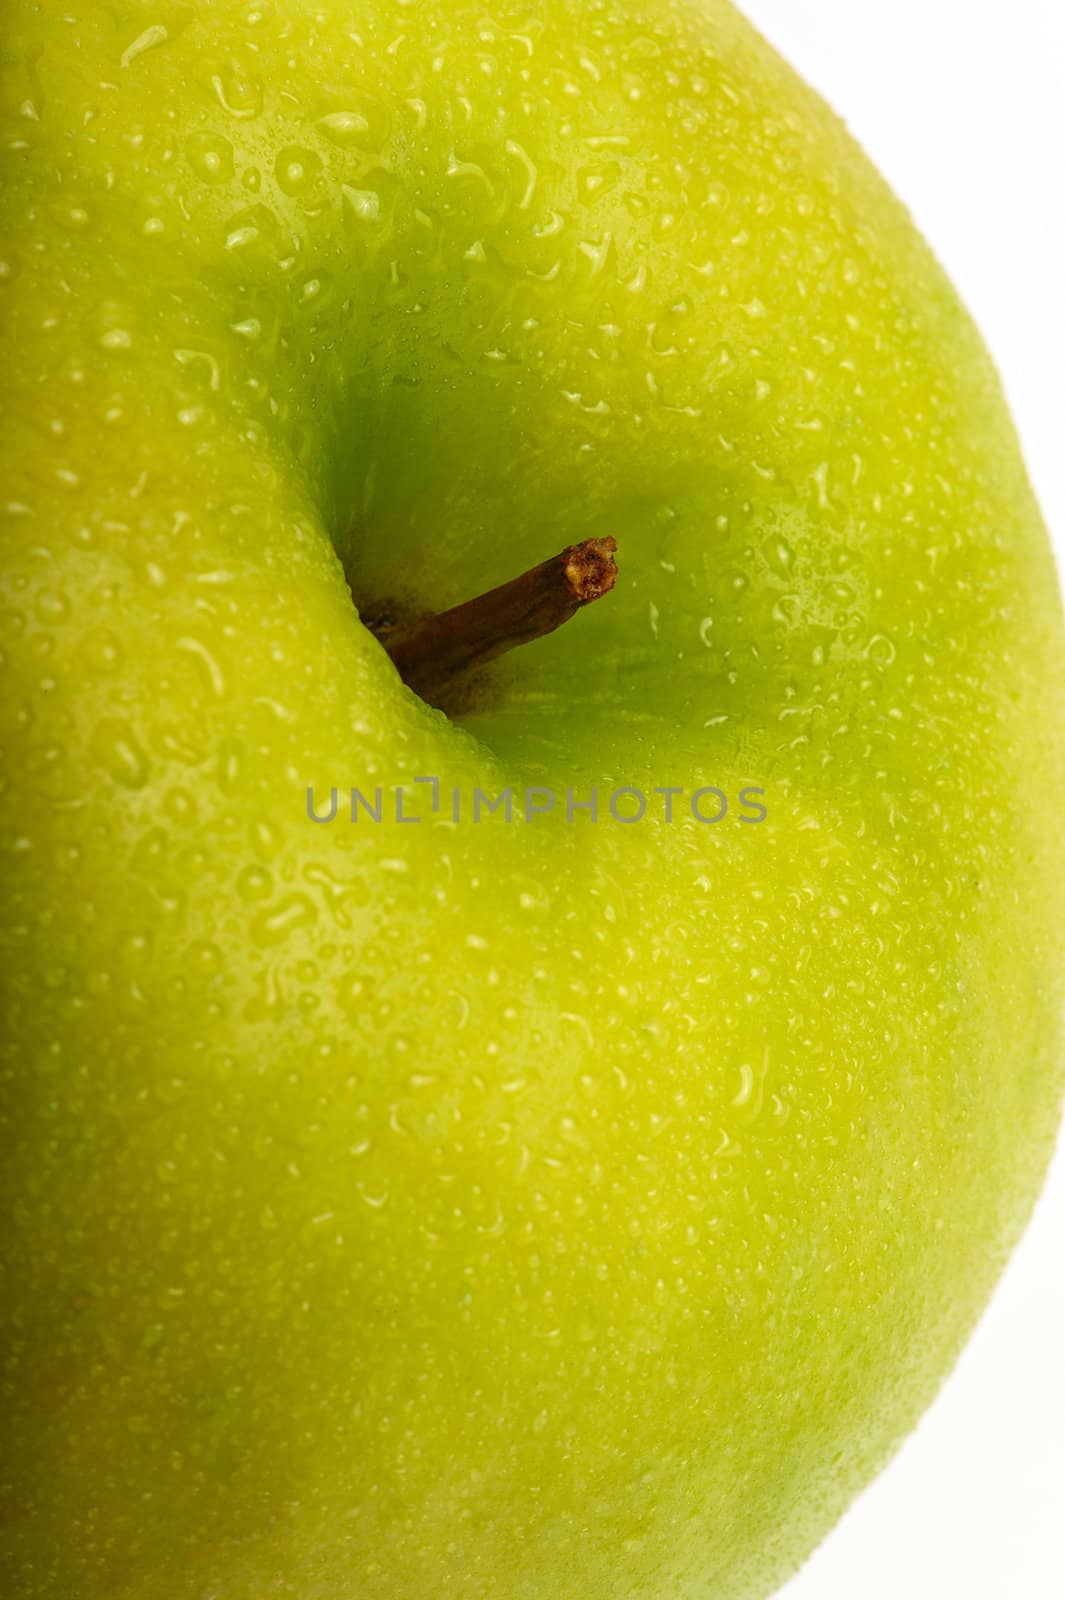 Green apple by Kamensky